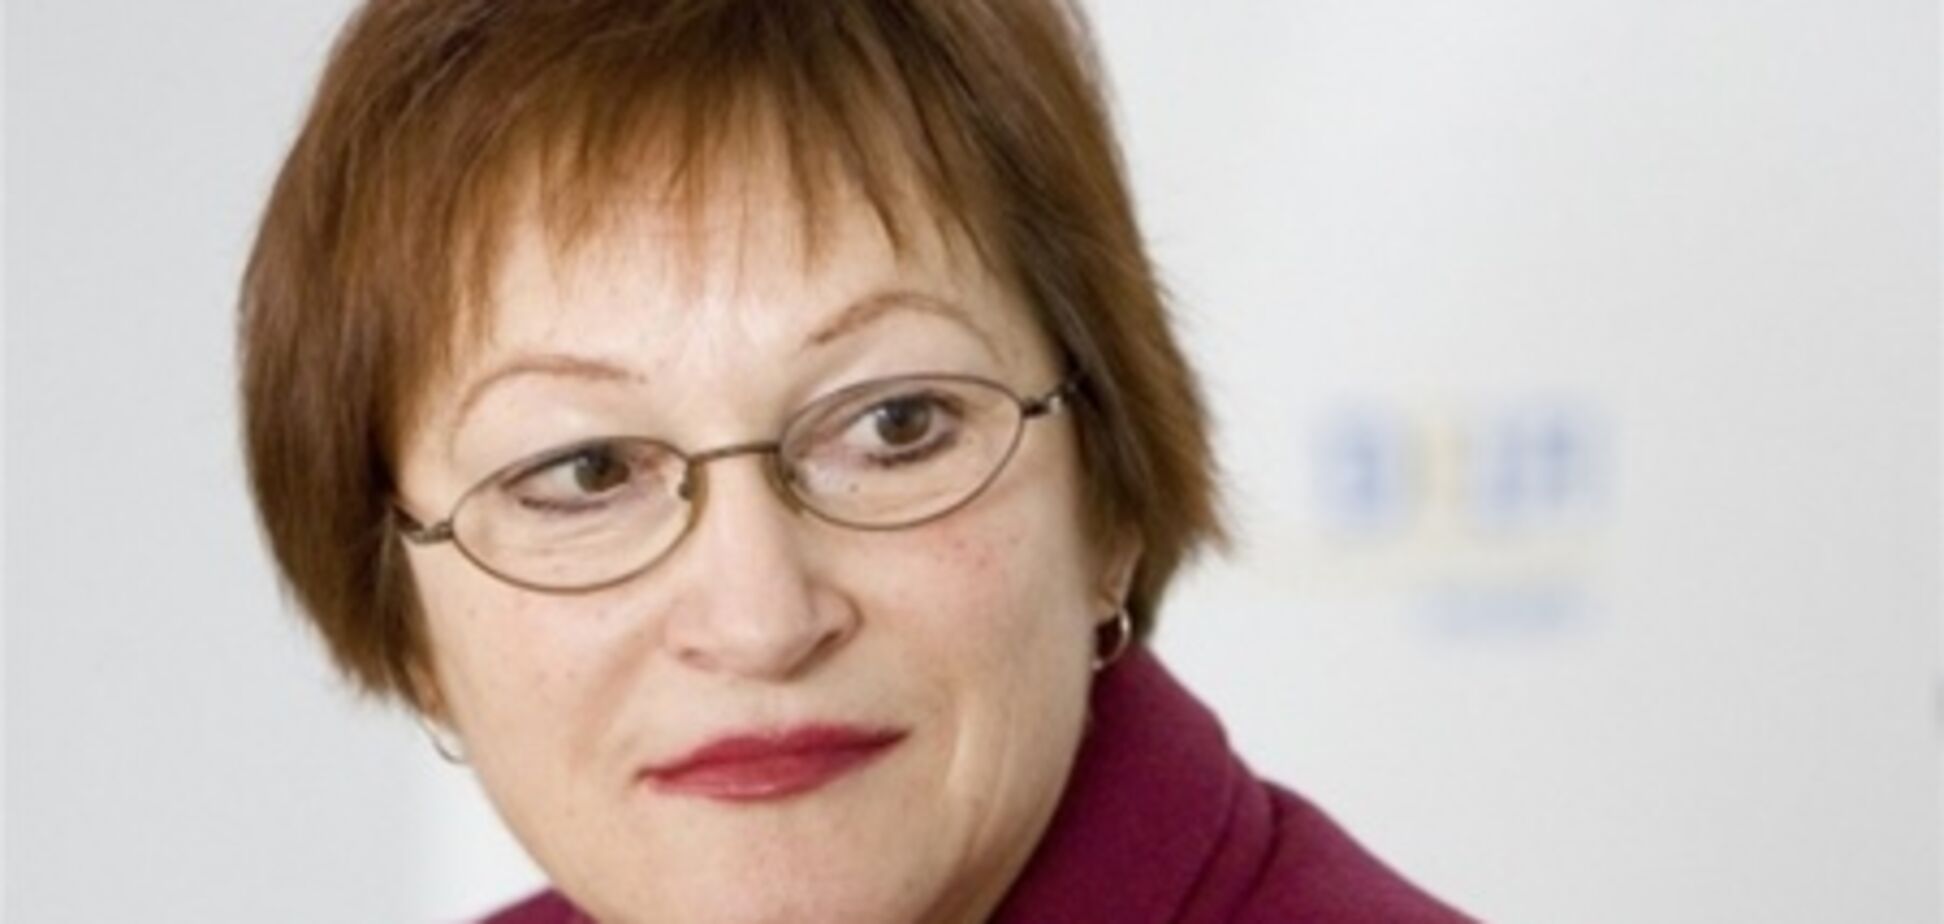 Литовского министра уволили за полет в Казахстан на частном самолете